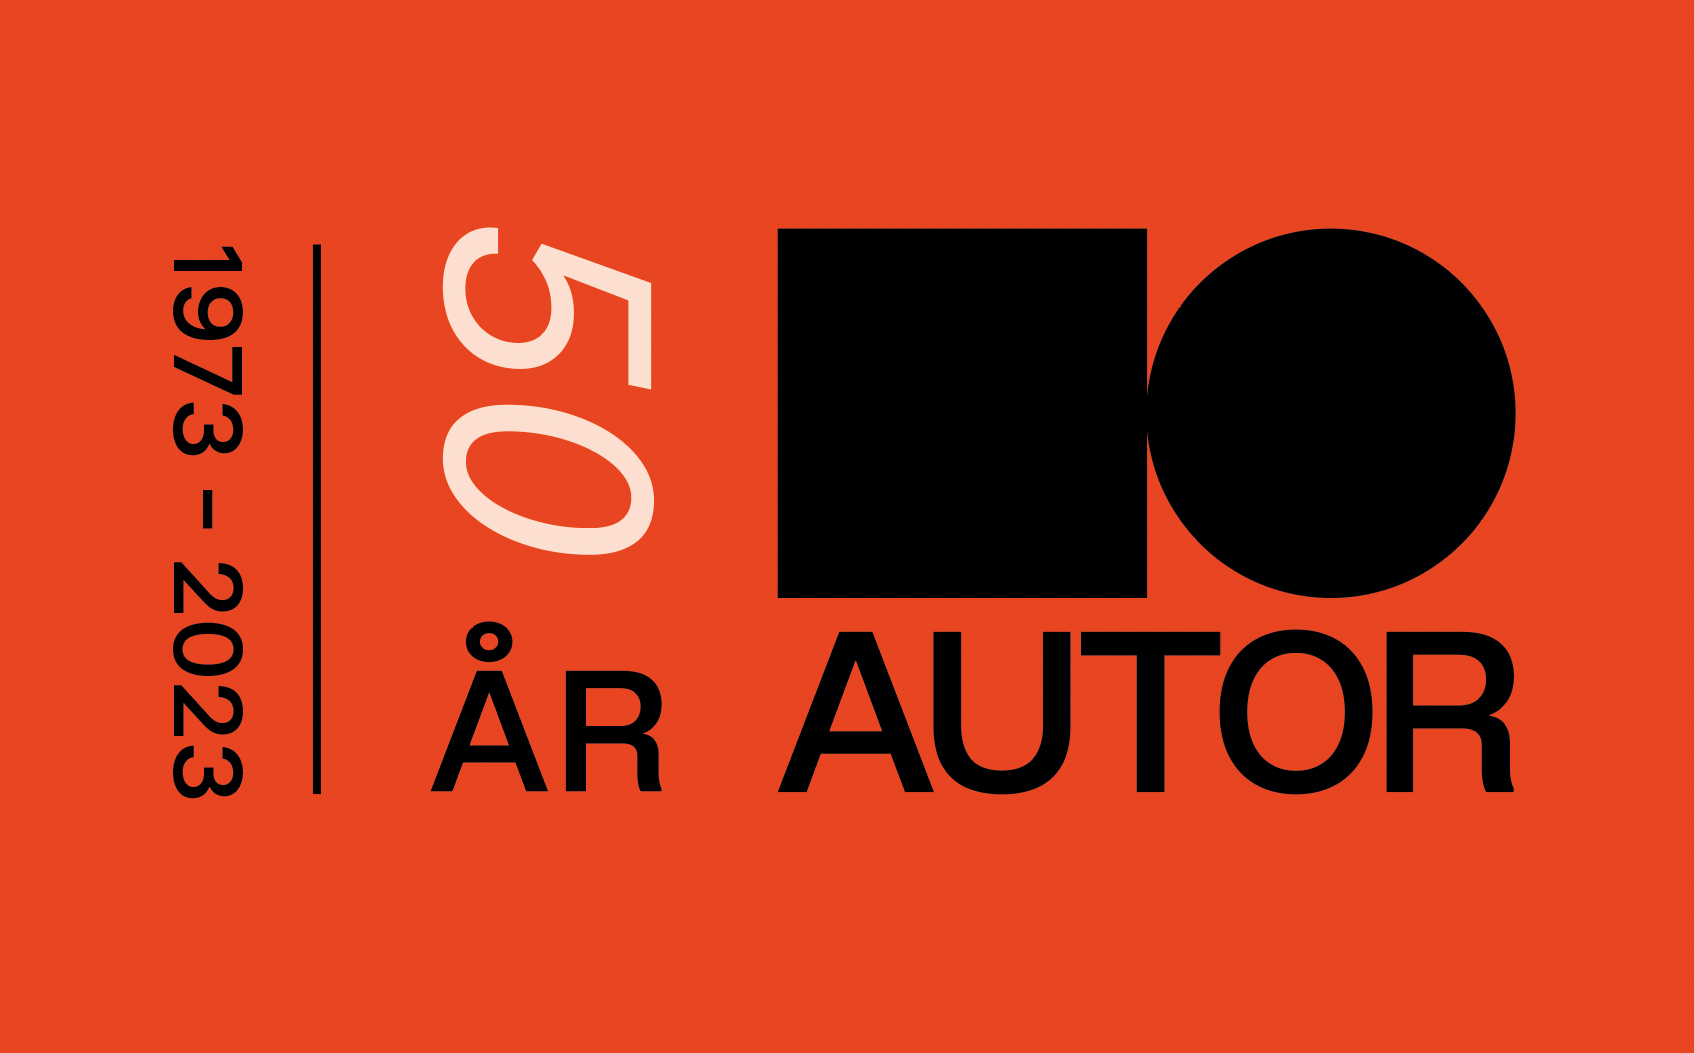 Et logo med ordene 'ar author' på orange baggrund.